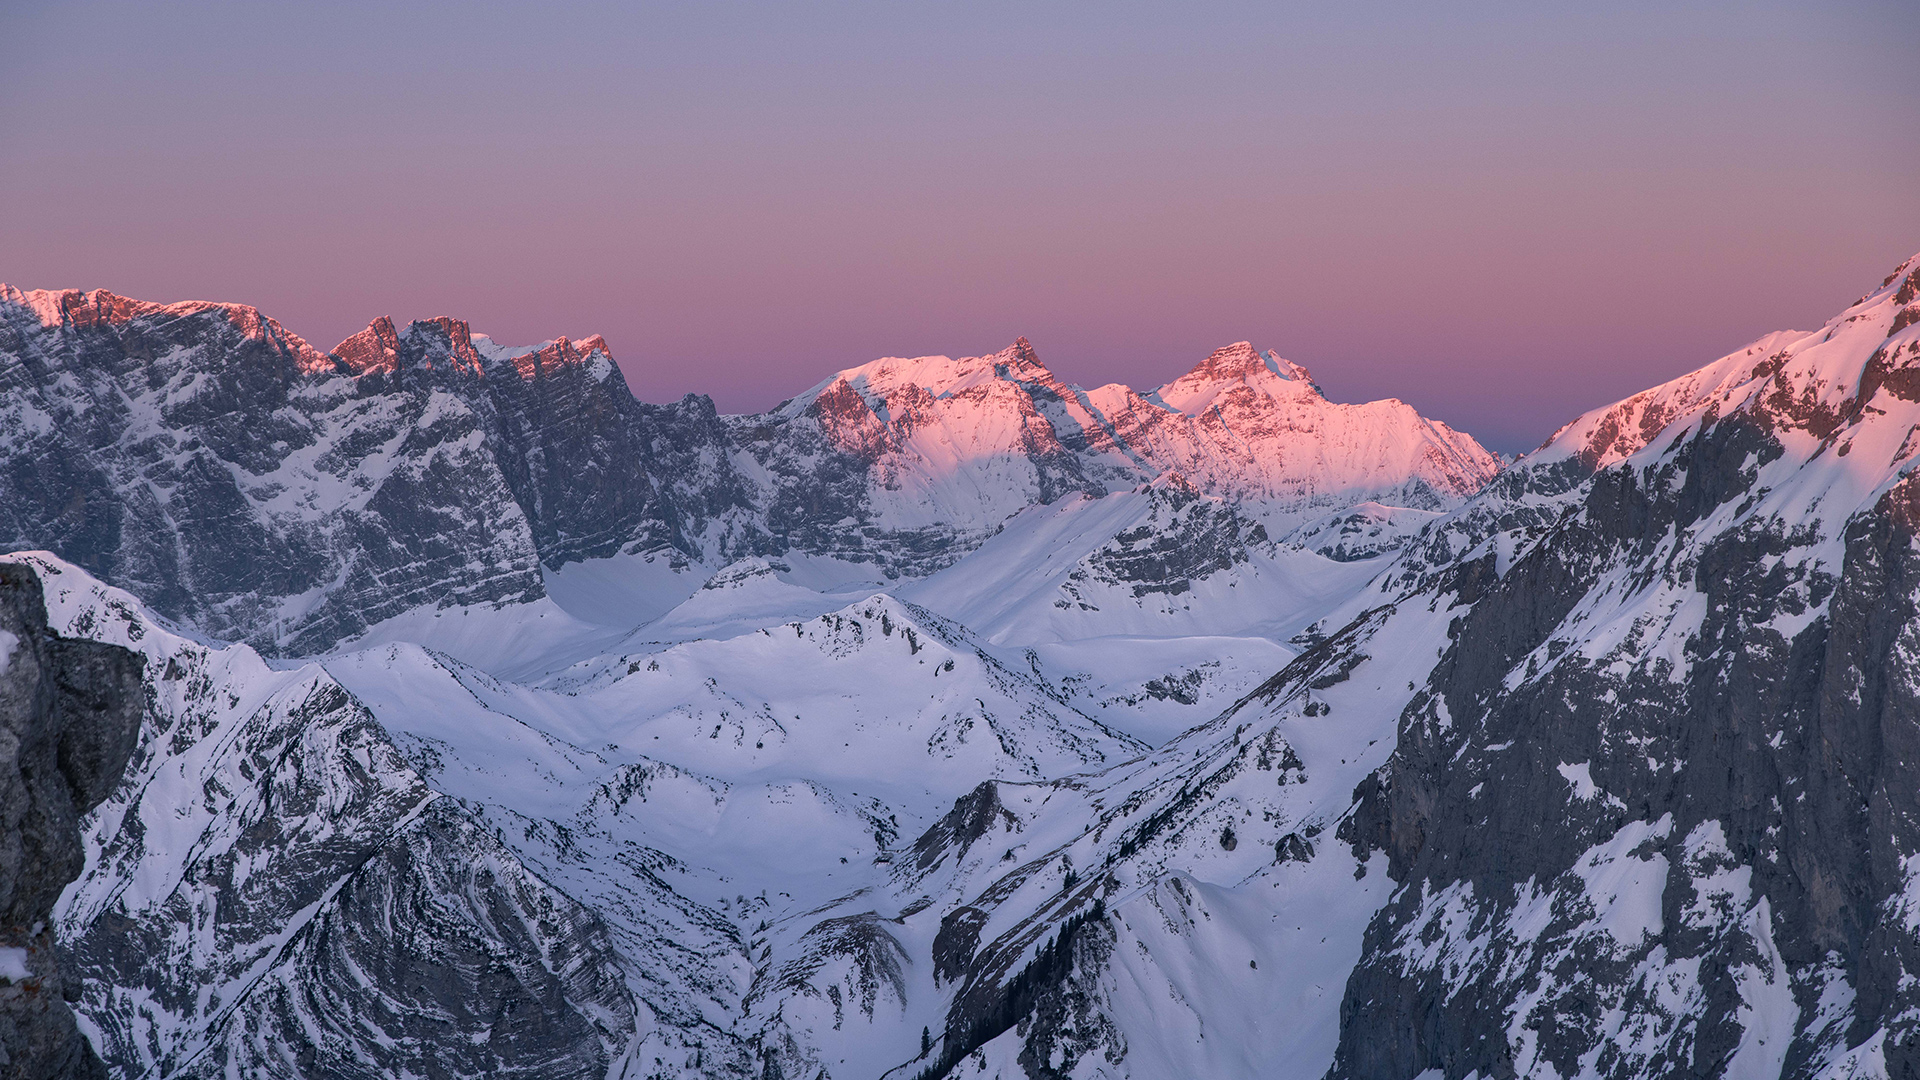 Der Blick auf den winterlichen Naturpark Karwendel bei Sonnenaufgang ist magisch. Die Gipfel und der Himmel färben sich violett und rosarot.